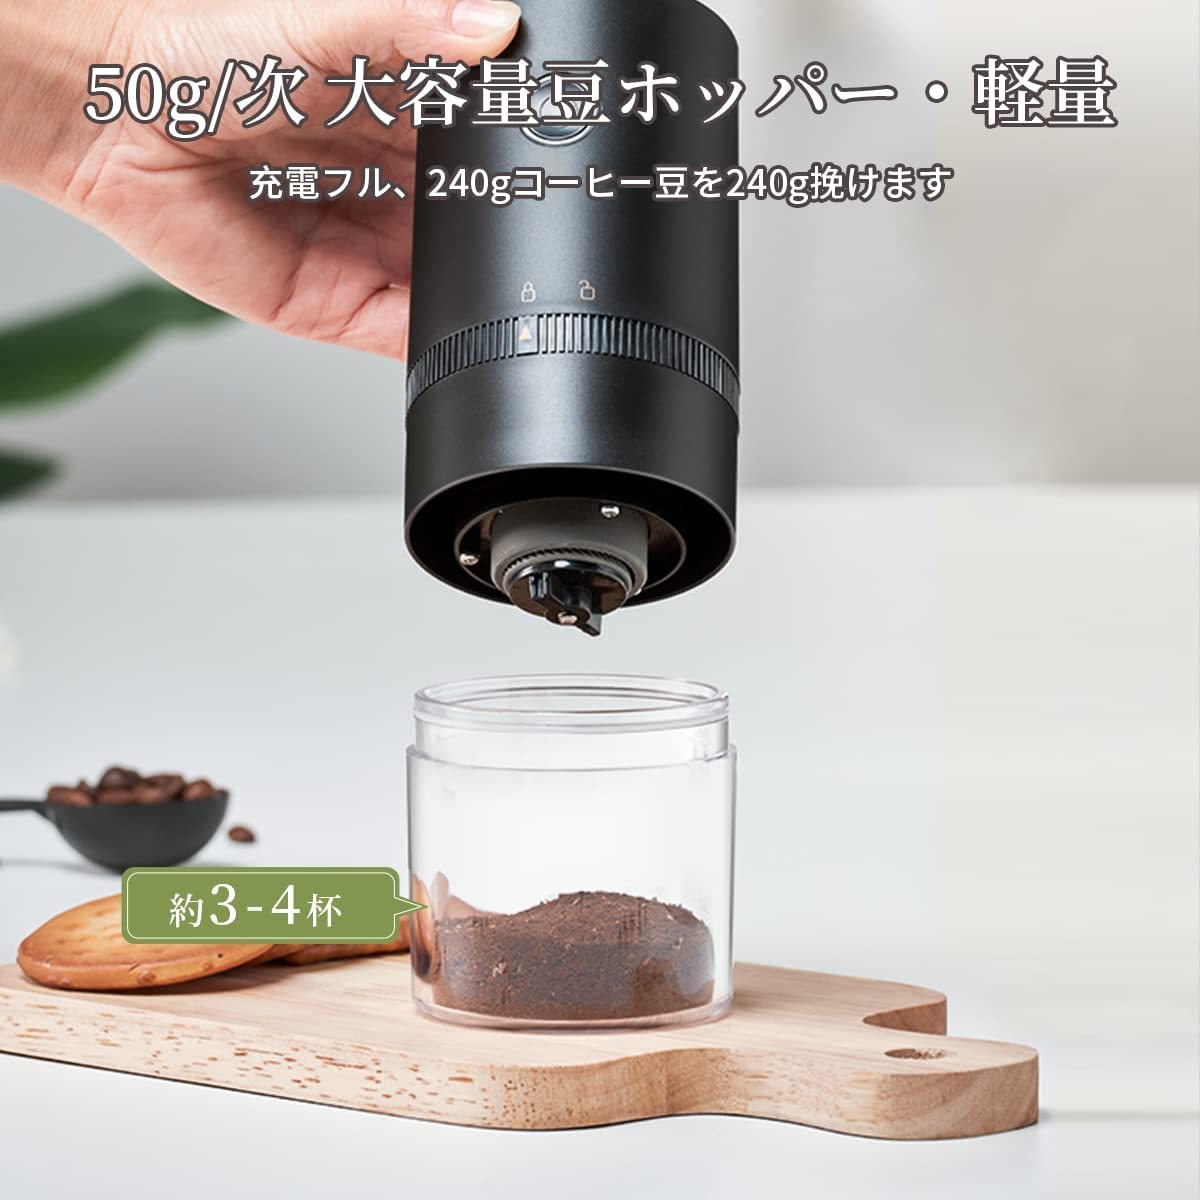 電動コーヒーミル コーヒーグラインダー 充電式 自動コーヒーミル 挽き具合7段階調整 セラミック 水洗い可能 掃除簡単 豆挽き コーヒー豆